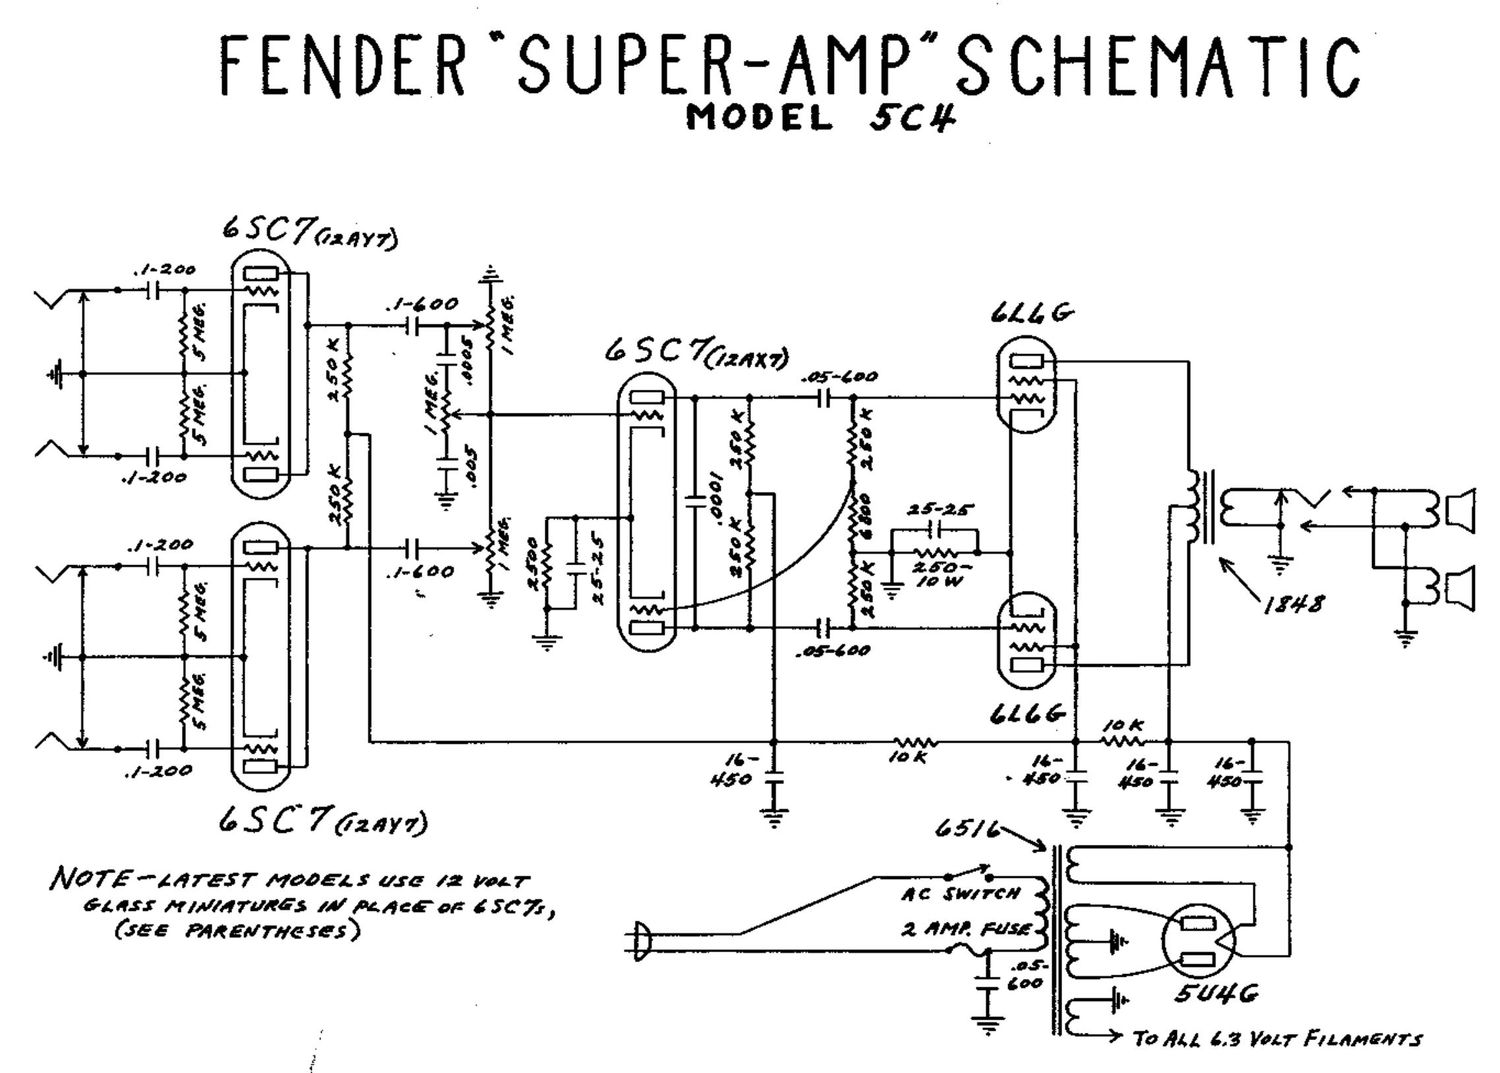 fender super 5c4 schematic